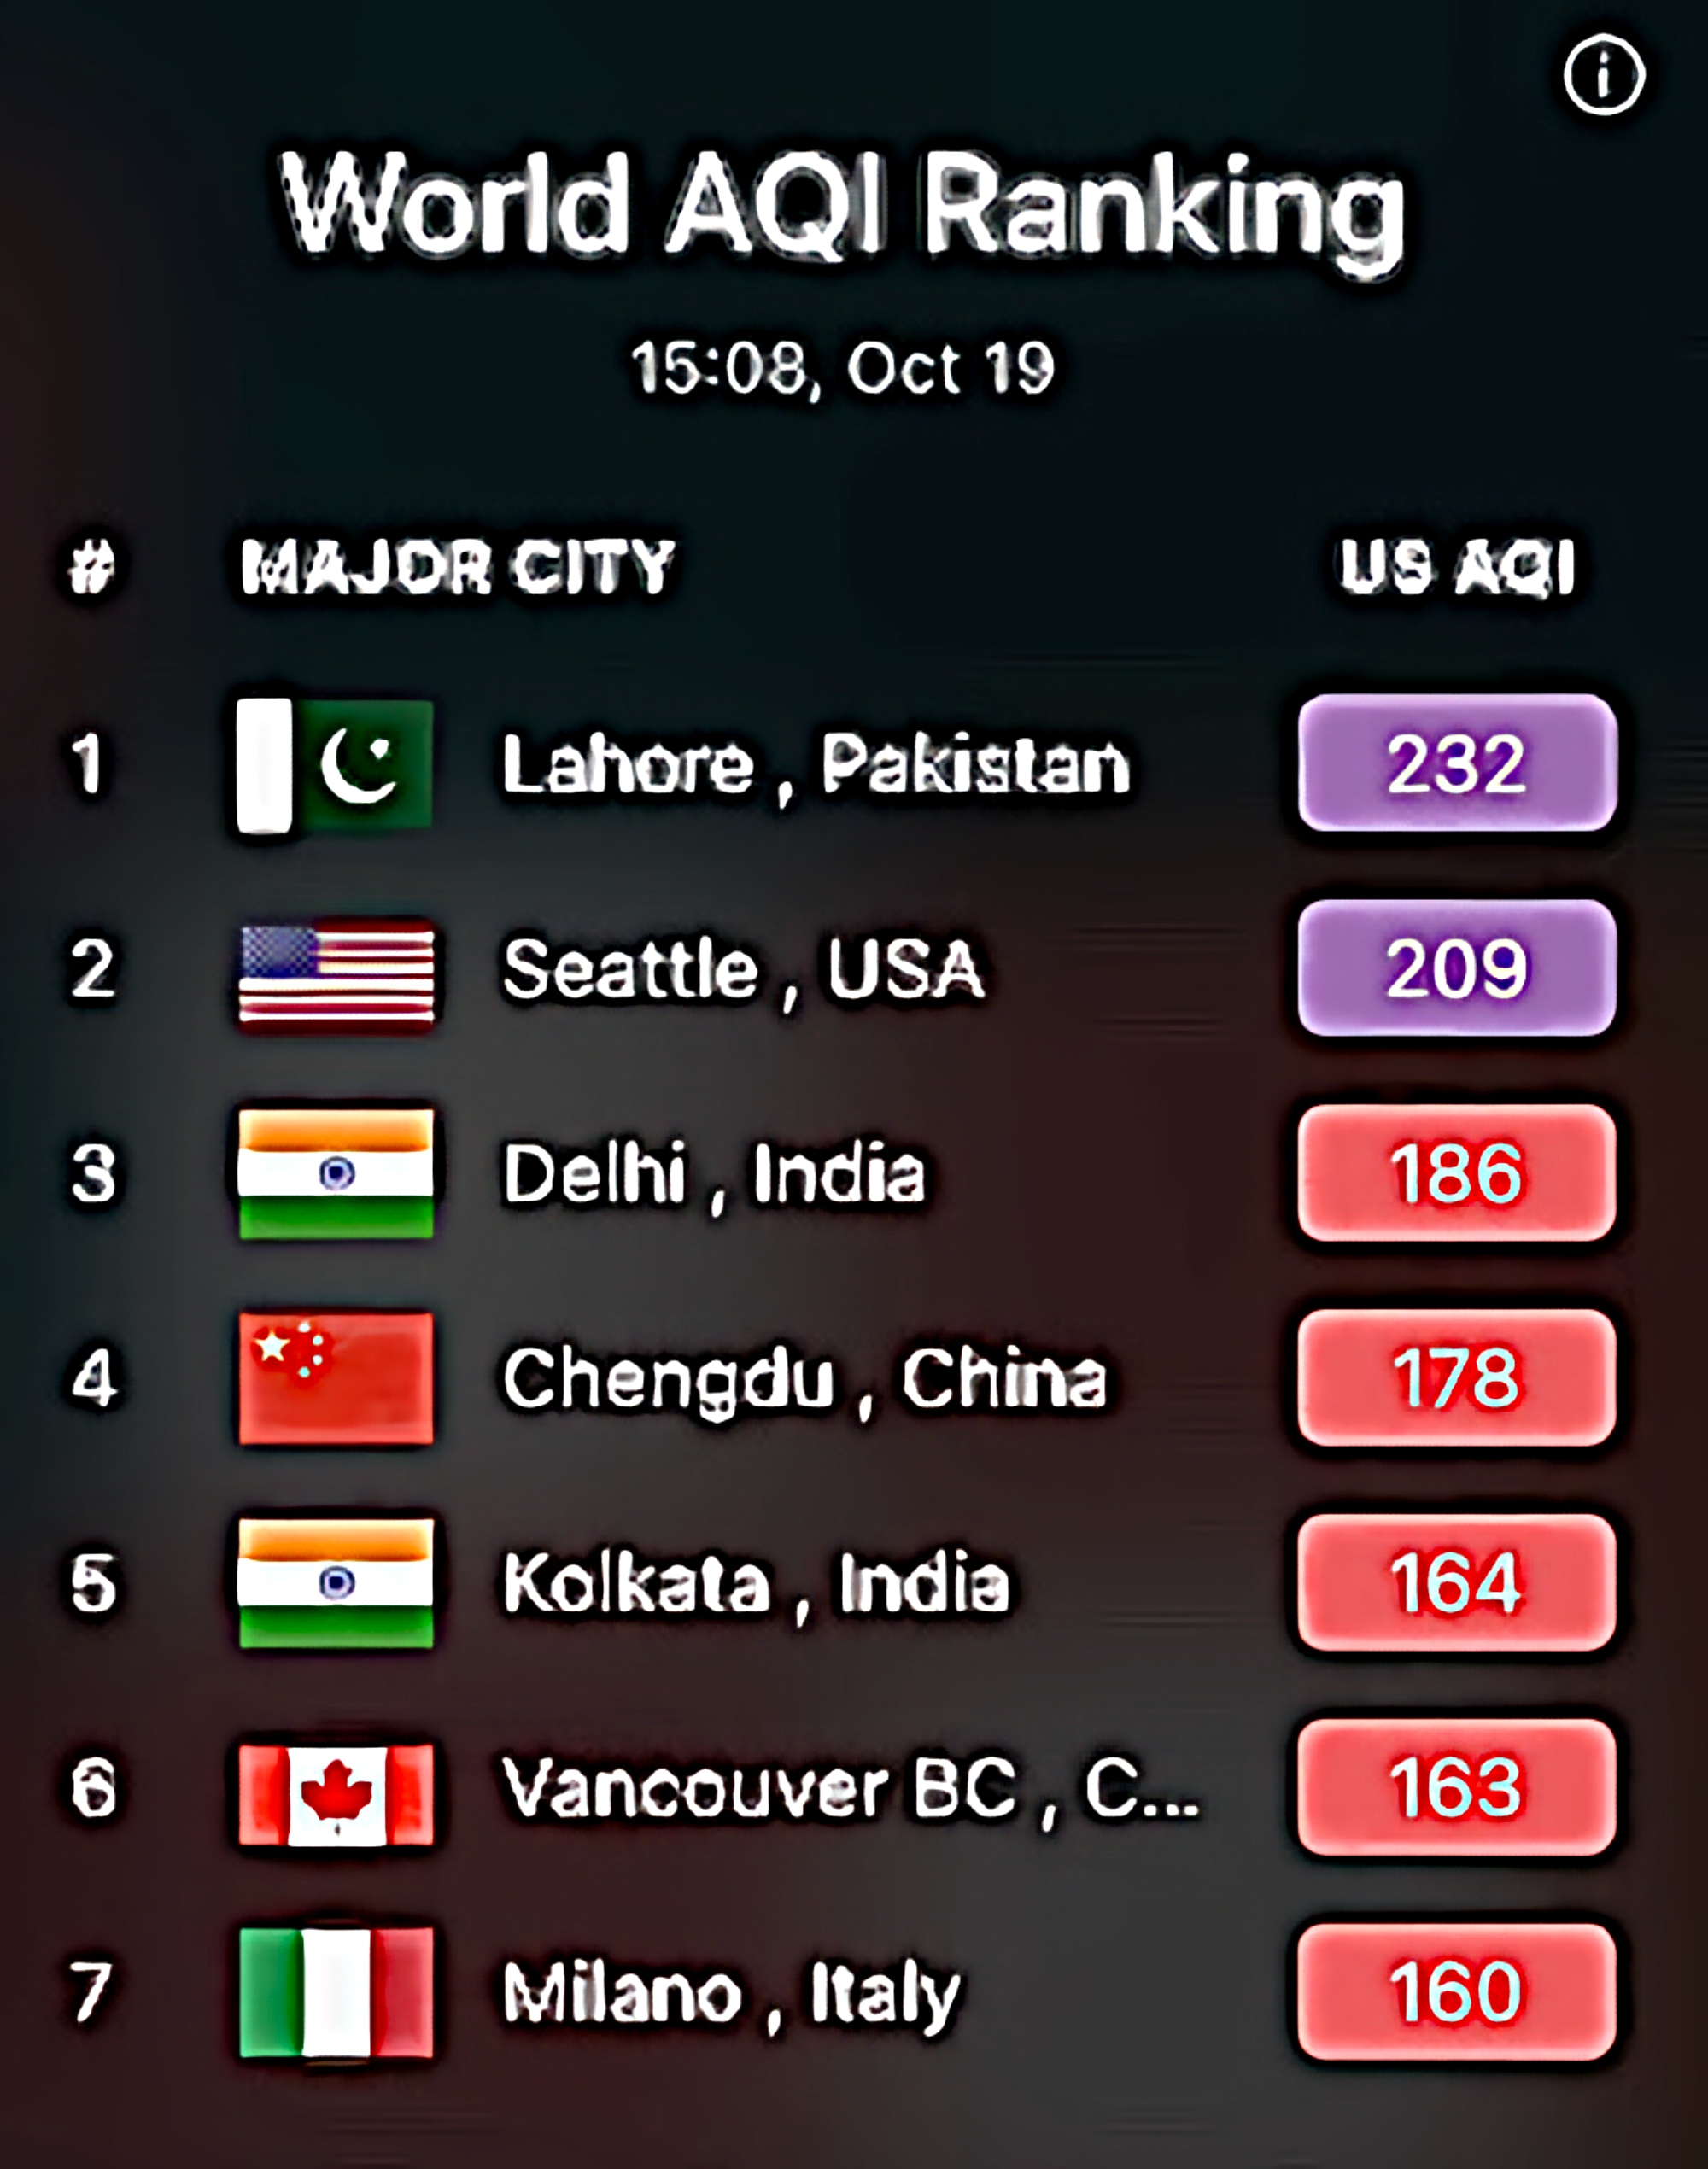 World AQI ranking